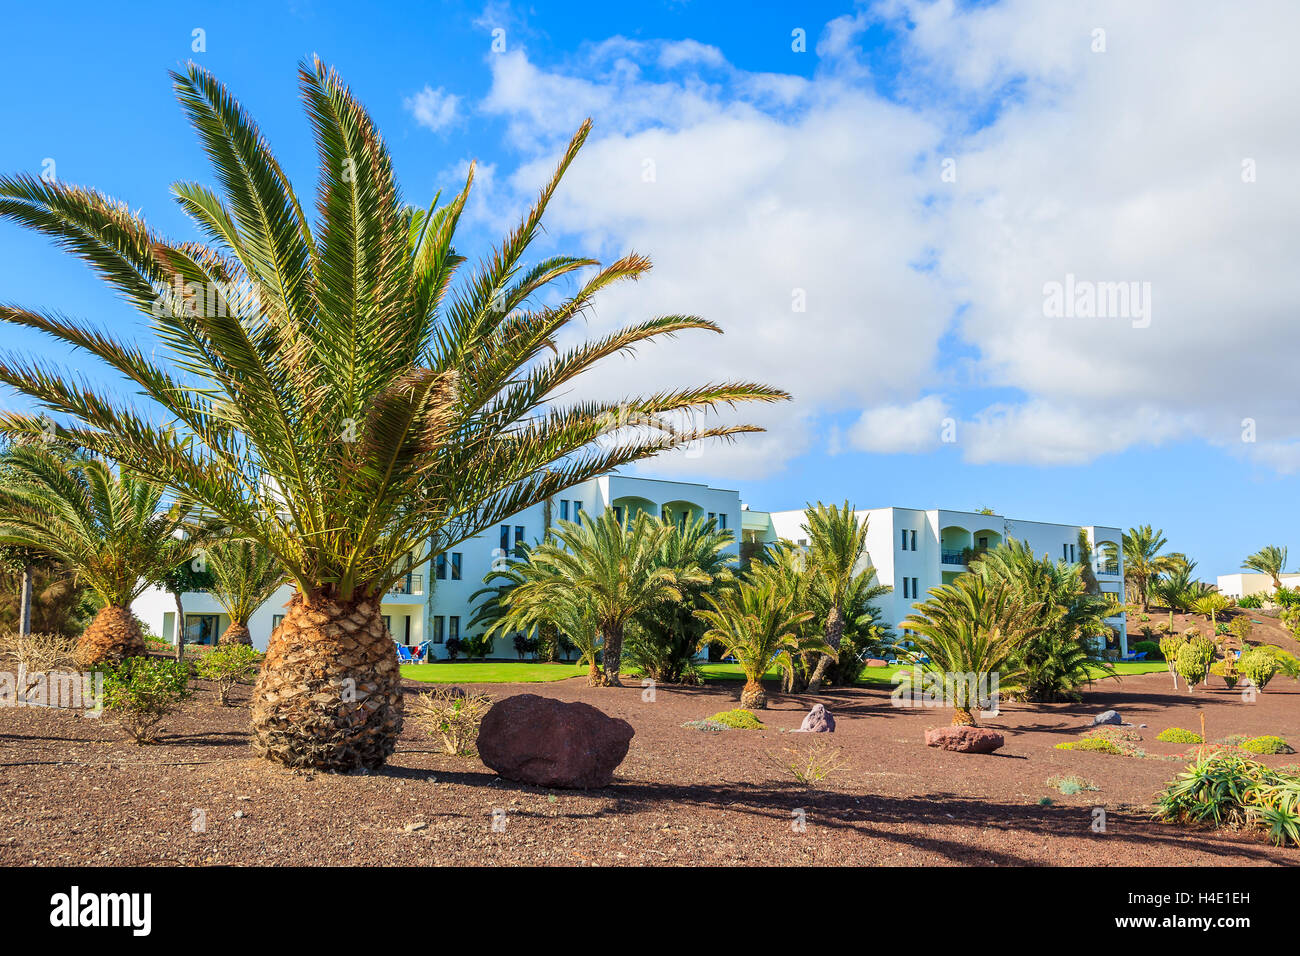 LAS PLAYITAS, à Fuerteventura - FEB 4 : jardin tropical en hôtel de luxe à Las Playitas village sur 4 févr. 2014, Îles Canaries, Espagne. Canaries sont populaires pour les vacances d'hiver en raison de son climat. Banque D'Images